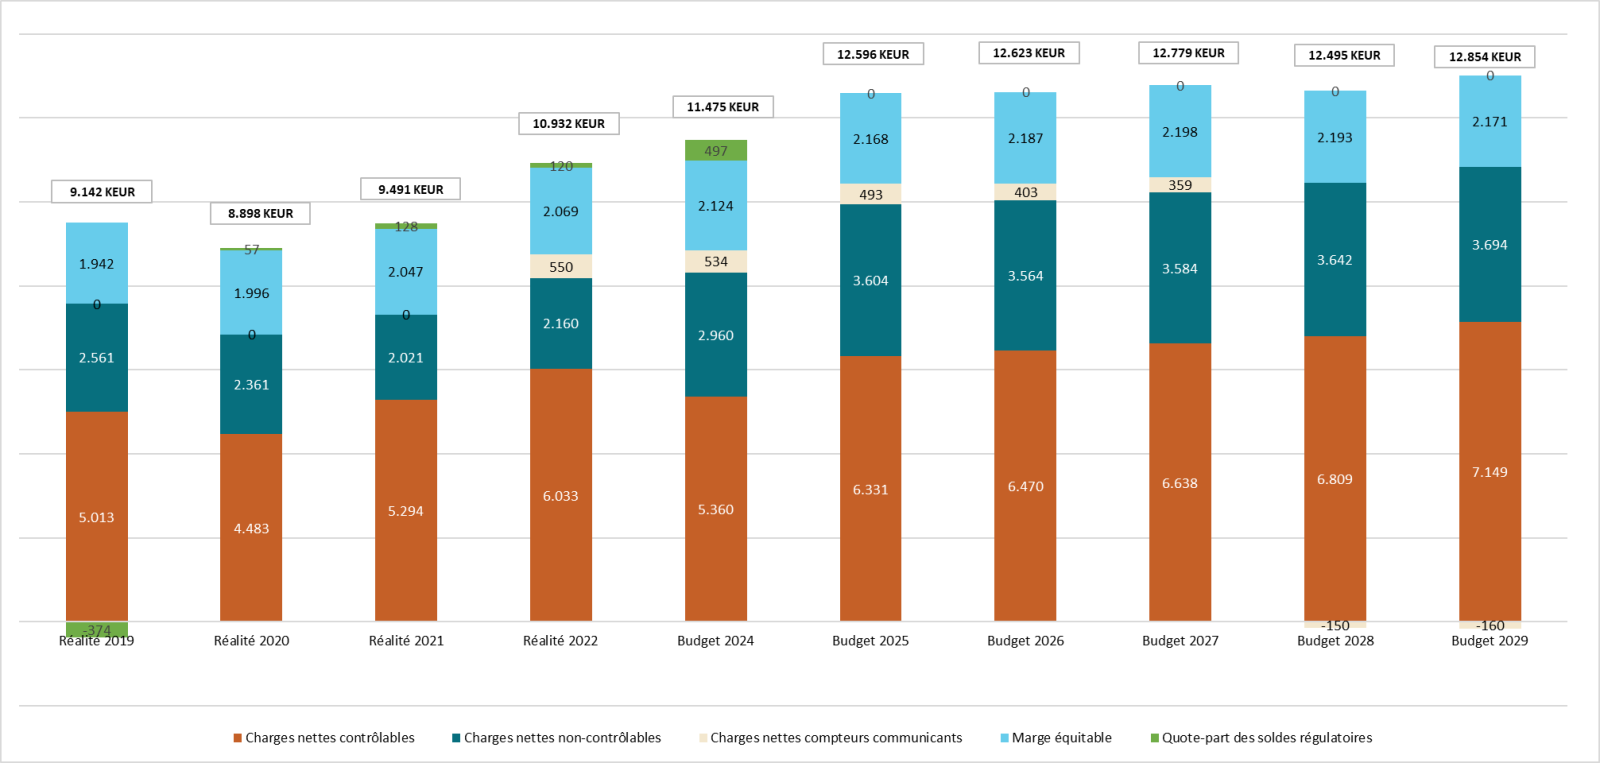 AIEG - Évolution des composants du revenu autorisé 2019-2029 (milliers d'euros)